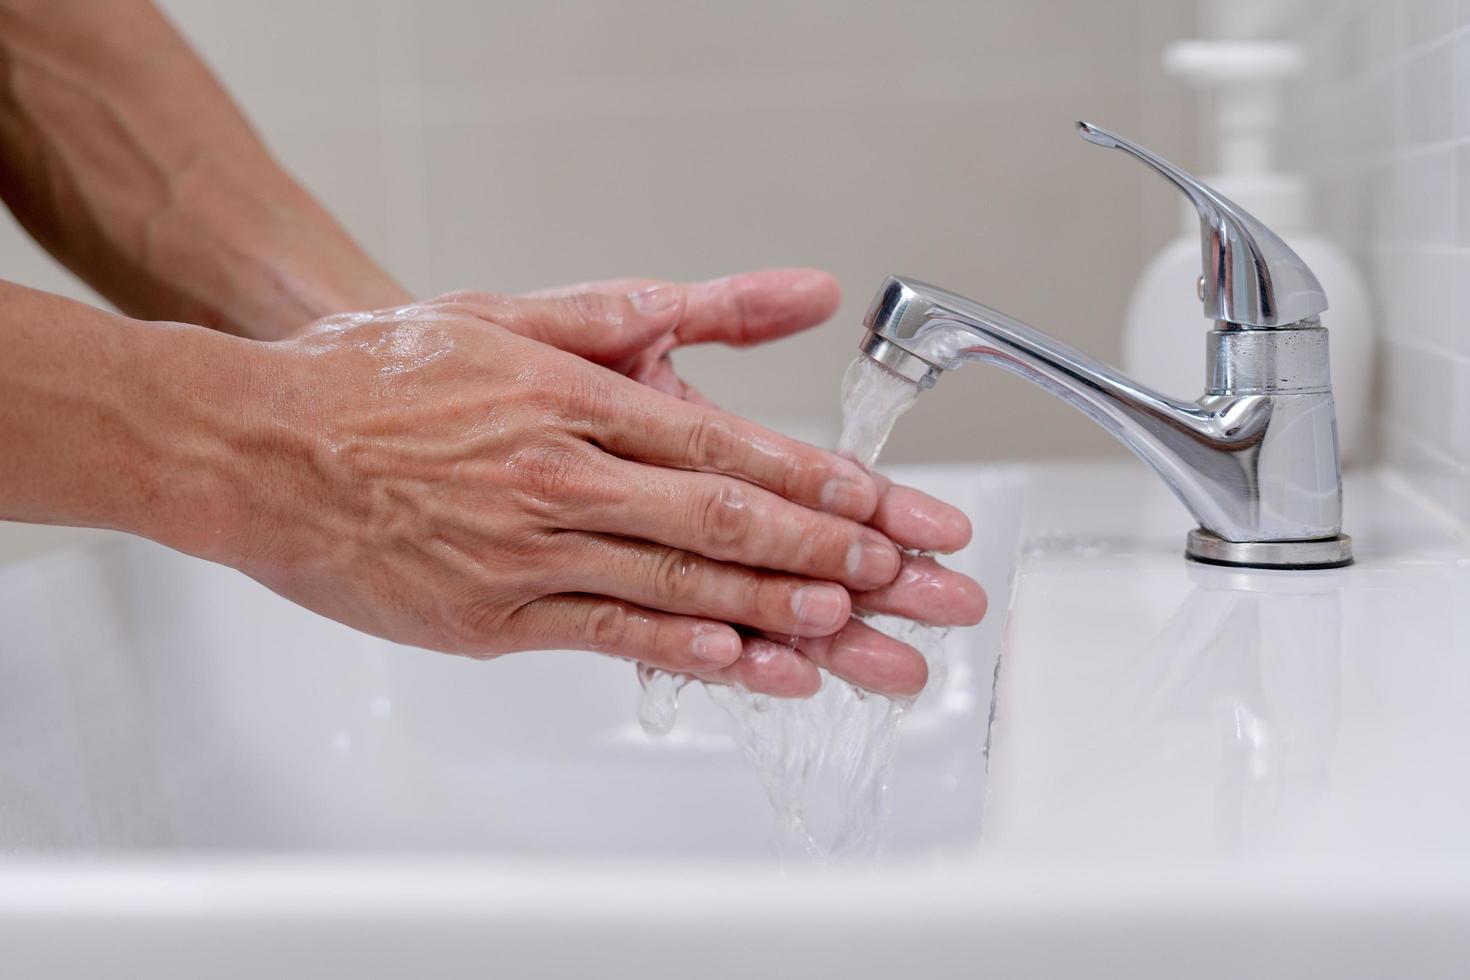 persoon handen wassen met zeep bubbels en spoelen met schoon water naar voorkomen en hou op de verspreiding van bacterieën, virus of covid19. mooi zo Gezondheid en mooi zo hygiëne foto